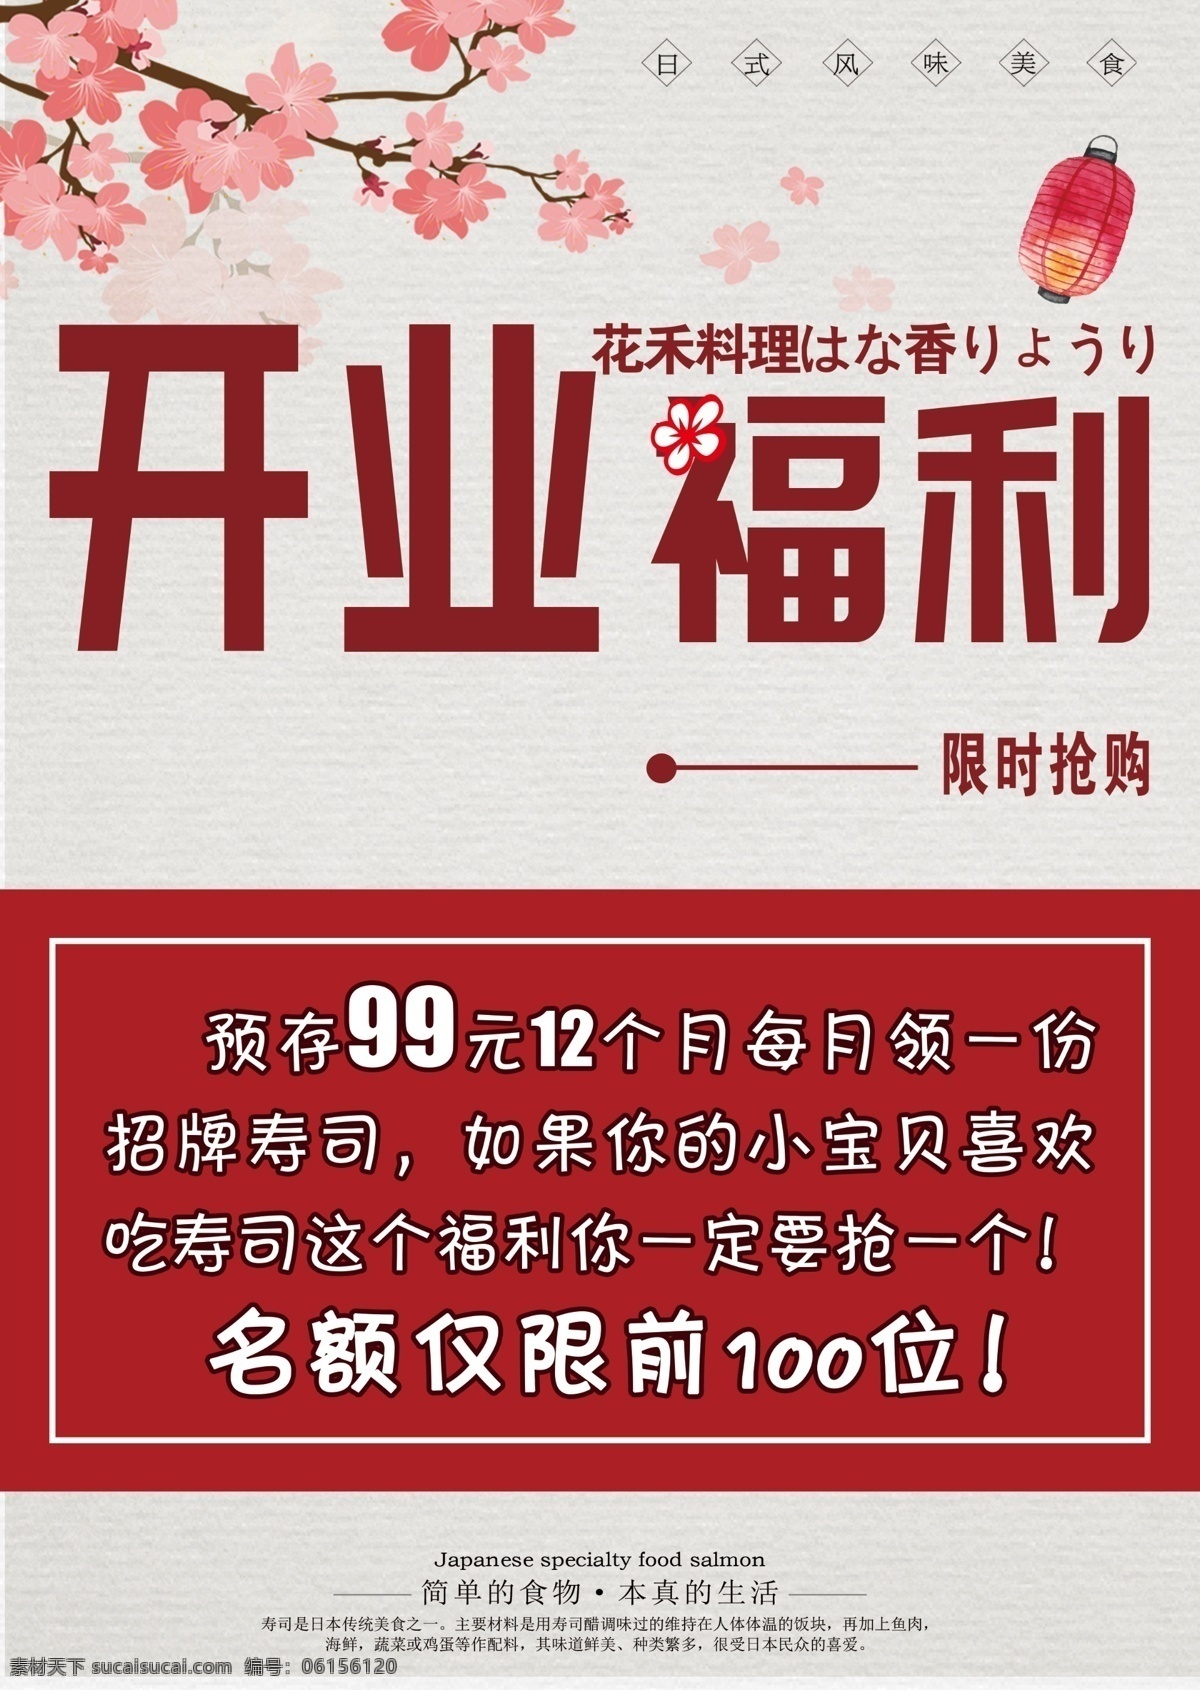 开业福利图片 料理 日本 标语 开业 福利